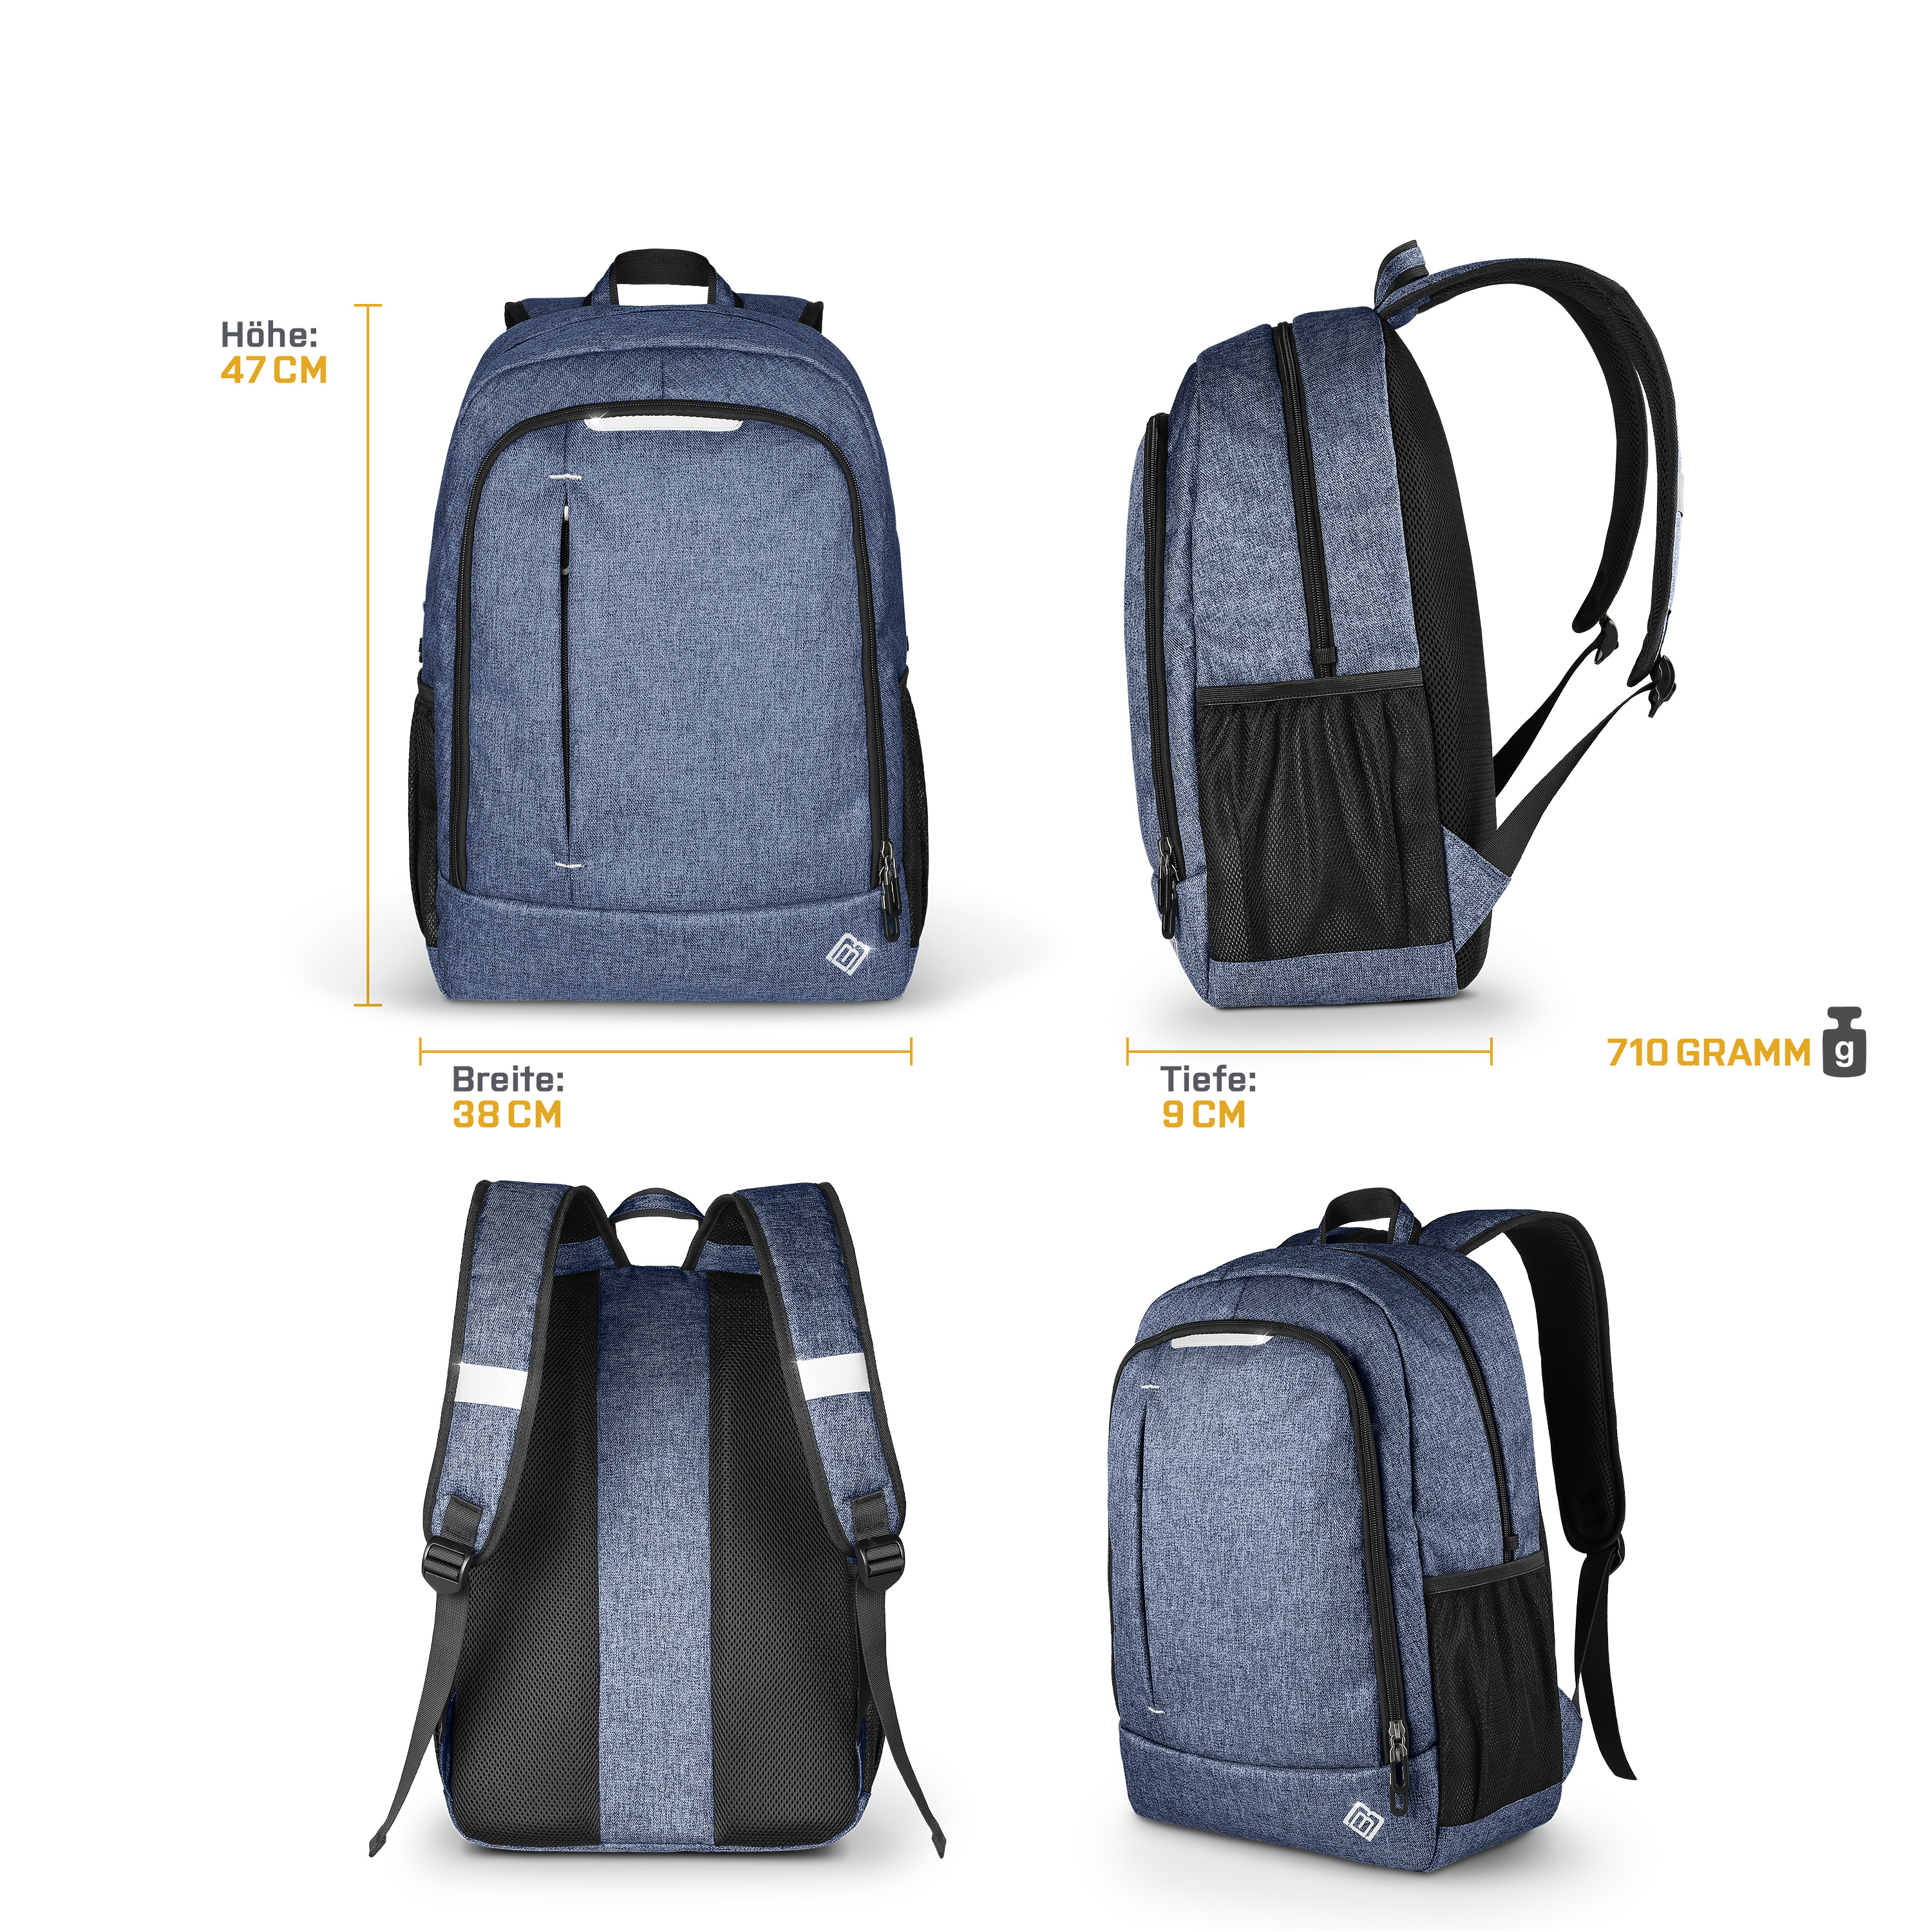 BOOSTBOXX BoostBag One blau blau Textil/Stoff, Universal für Rucksack Notebook-Rucksack